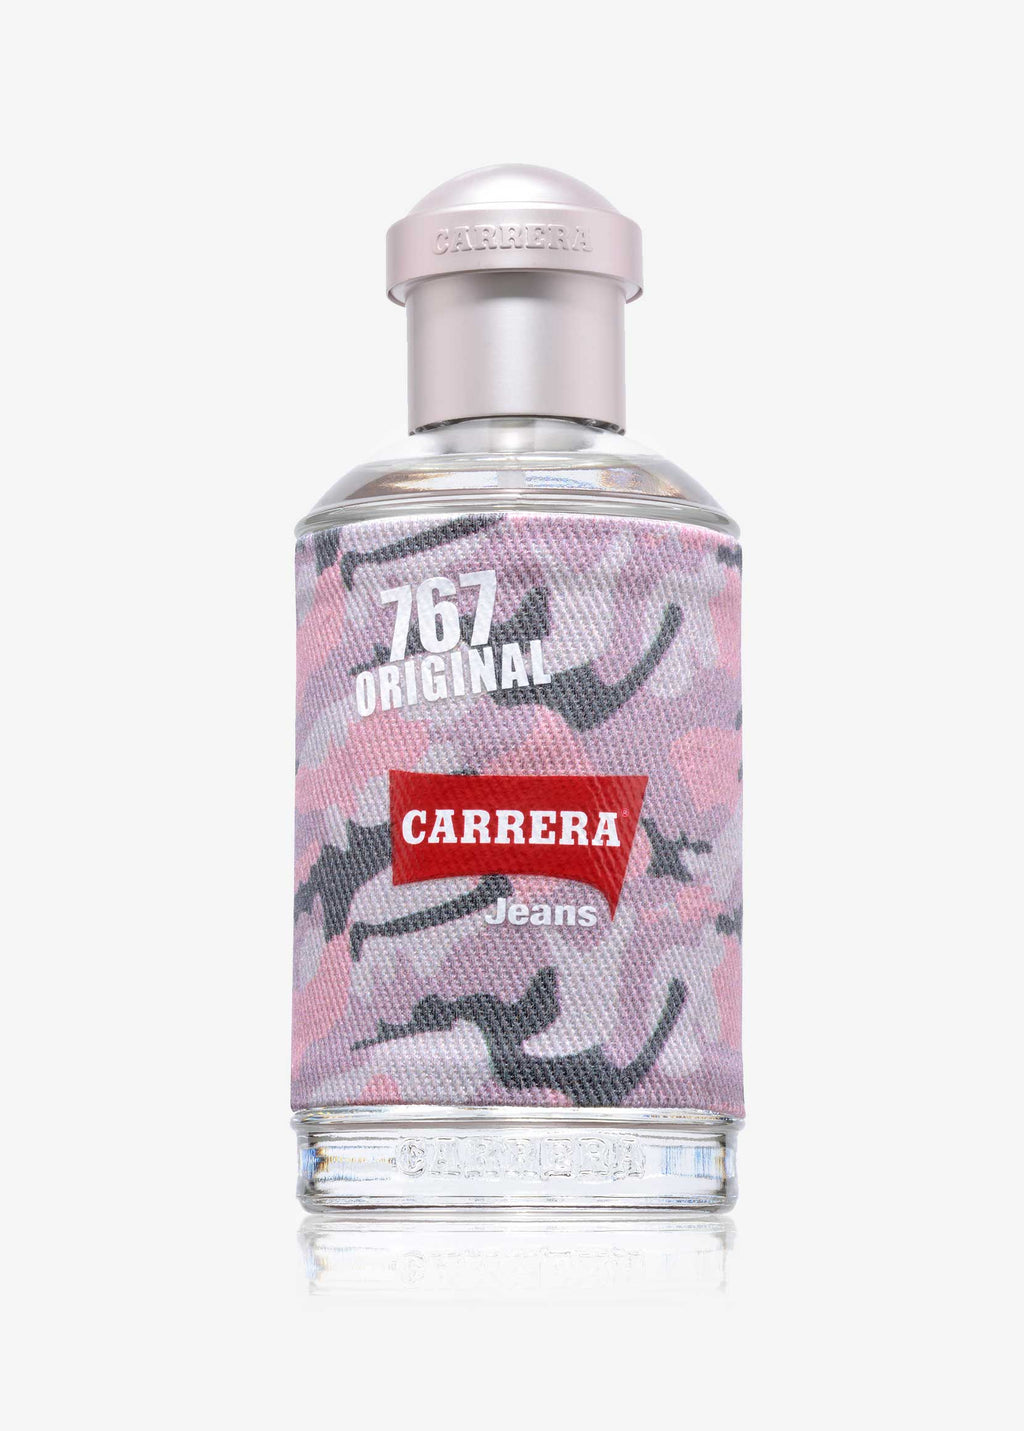 767 ORIGINAL Eau de Parfum – CarreraParfums